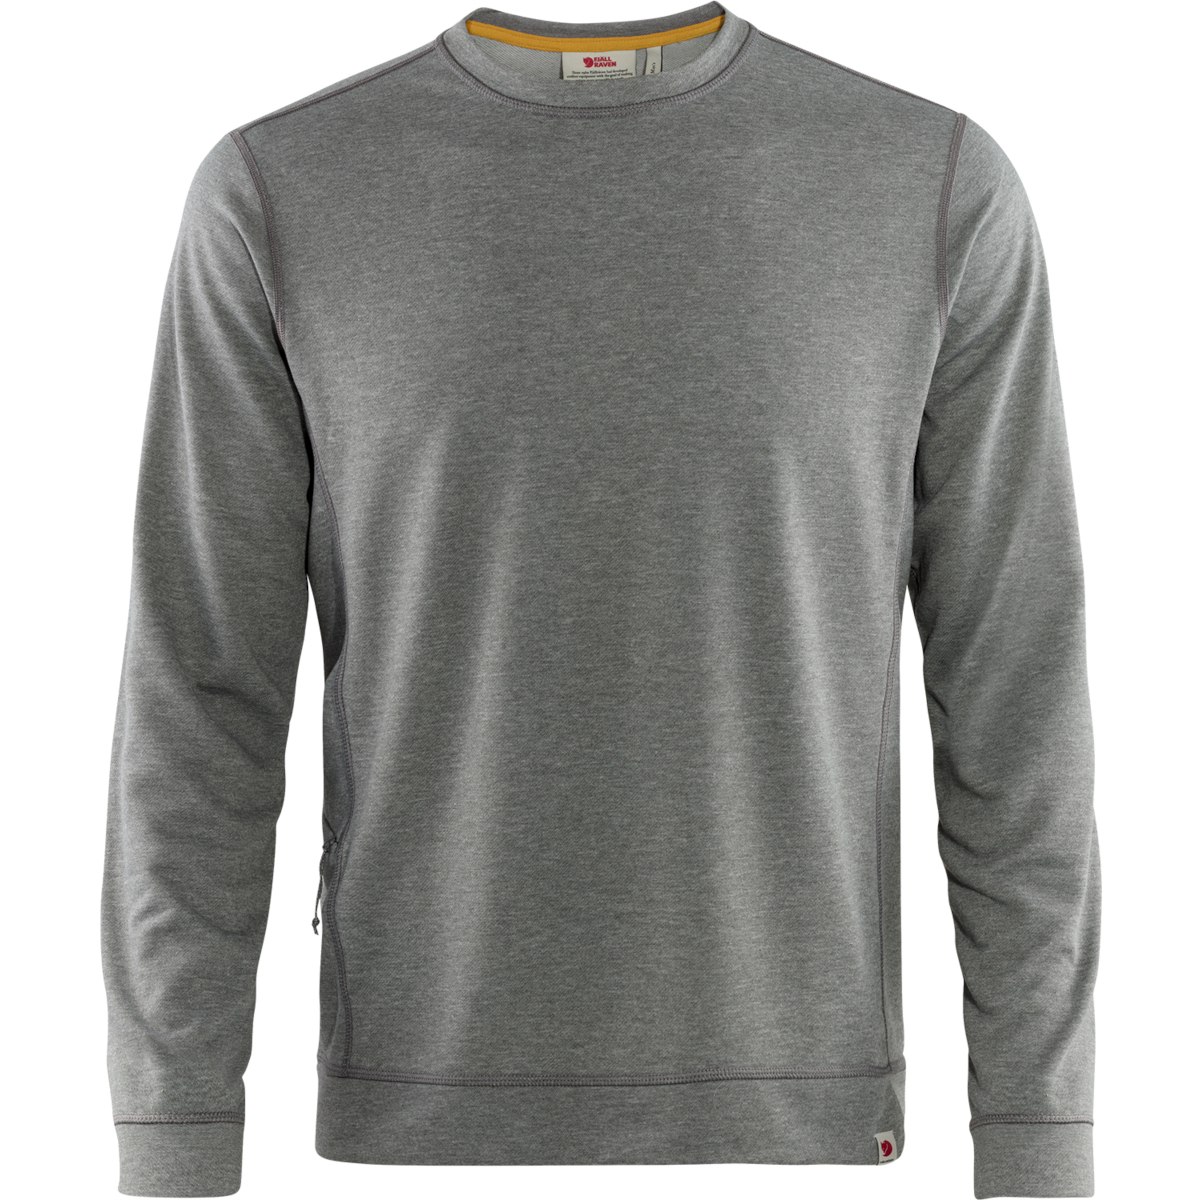 Produktbild von Fjällräven High Coast Lite Sweater - grau